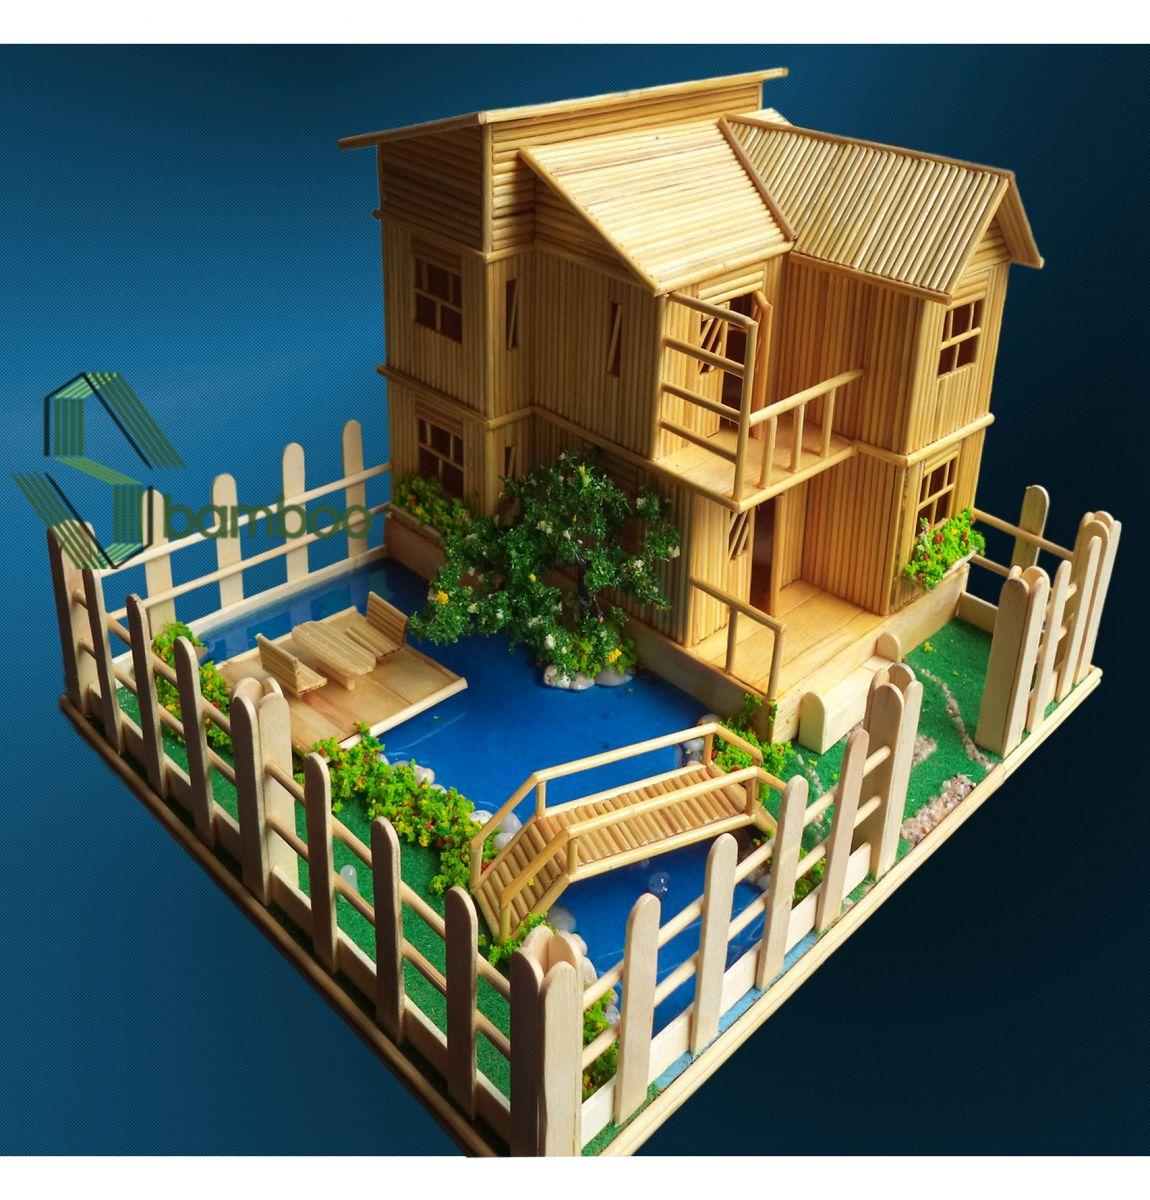 DIY  Mô hình nhà bằng que kem  Mồ hình nhà 03  Minion Handmade  YouTube